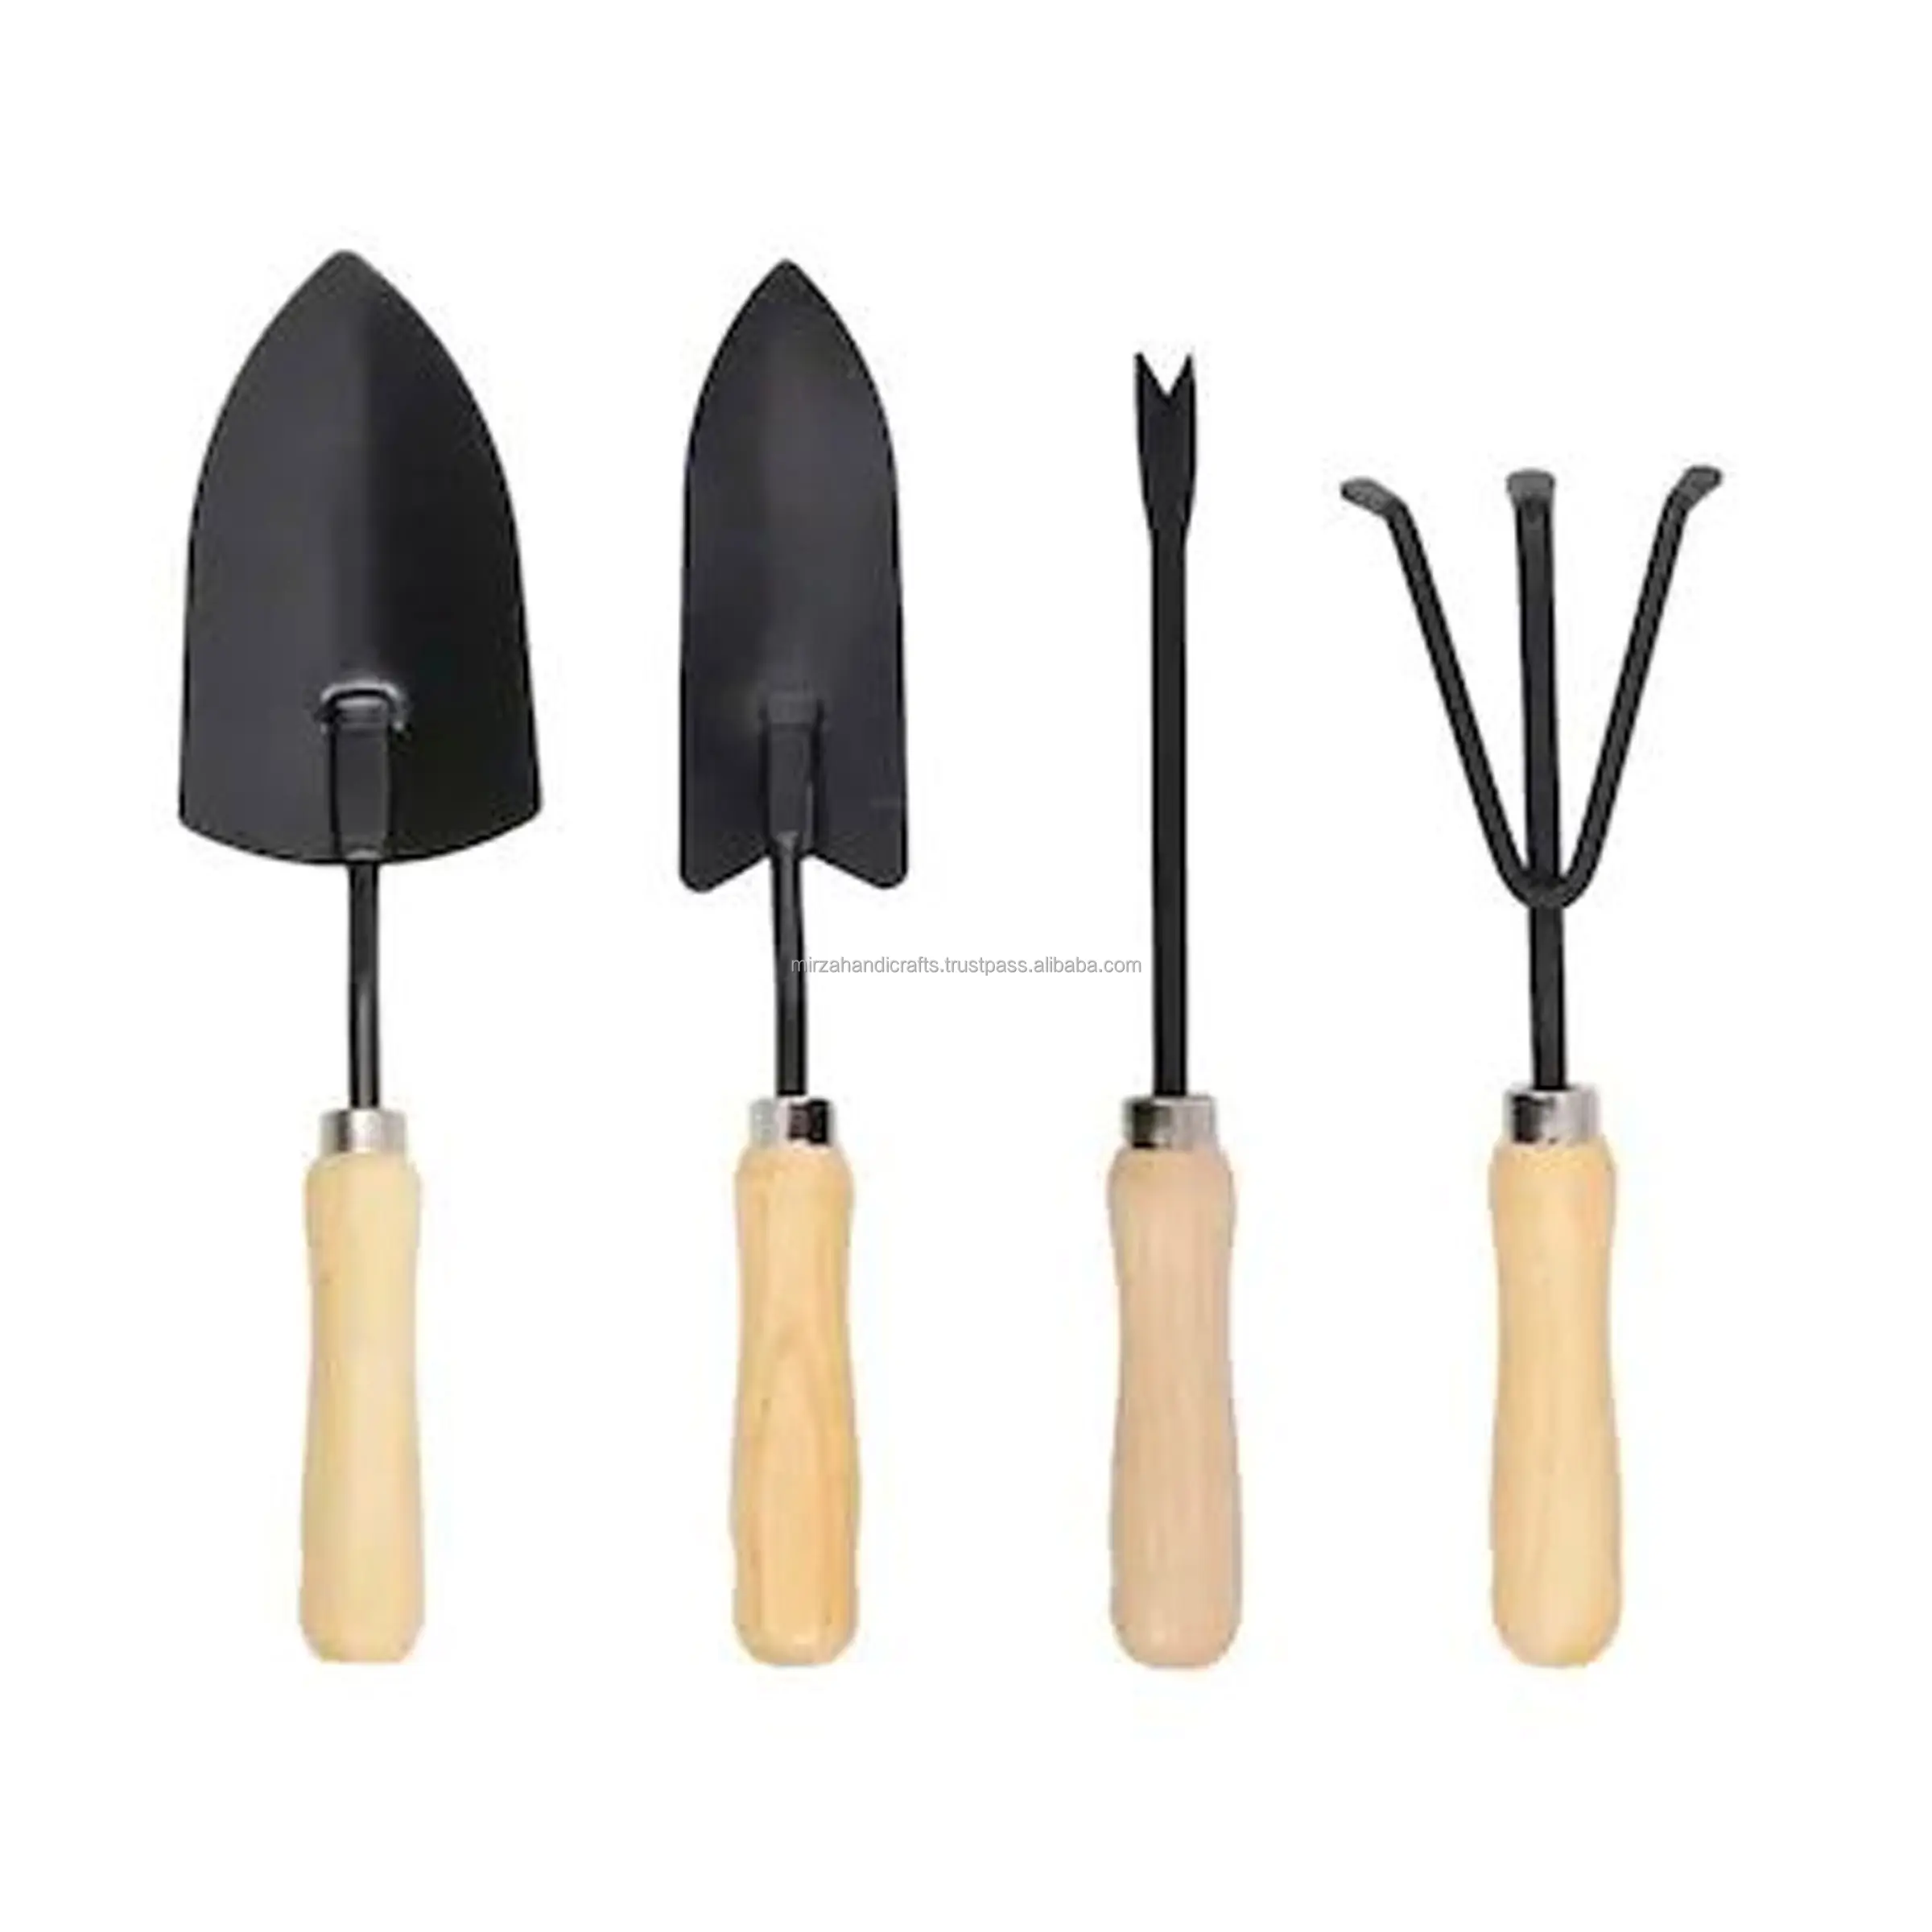 Neue Produkte Garten handwerkzeuge Set Garten handwerkzeuge sind sehr nützlich für alle Ihre Garten bedürfnisse